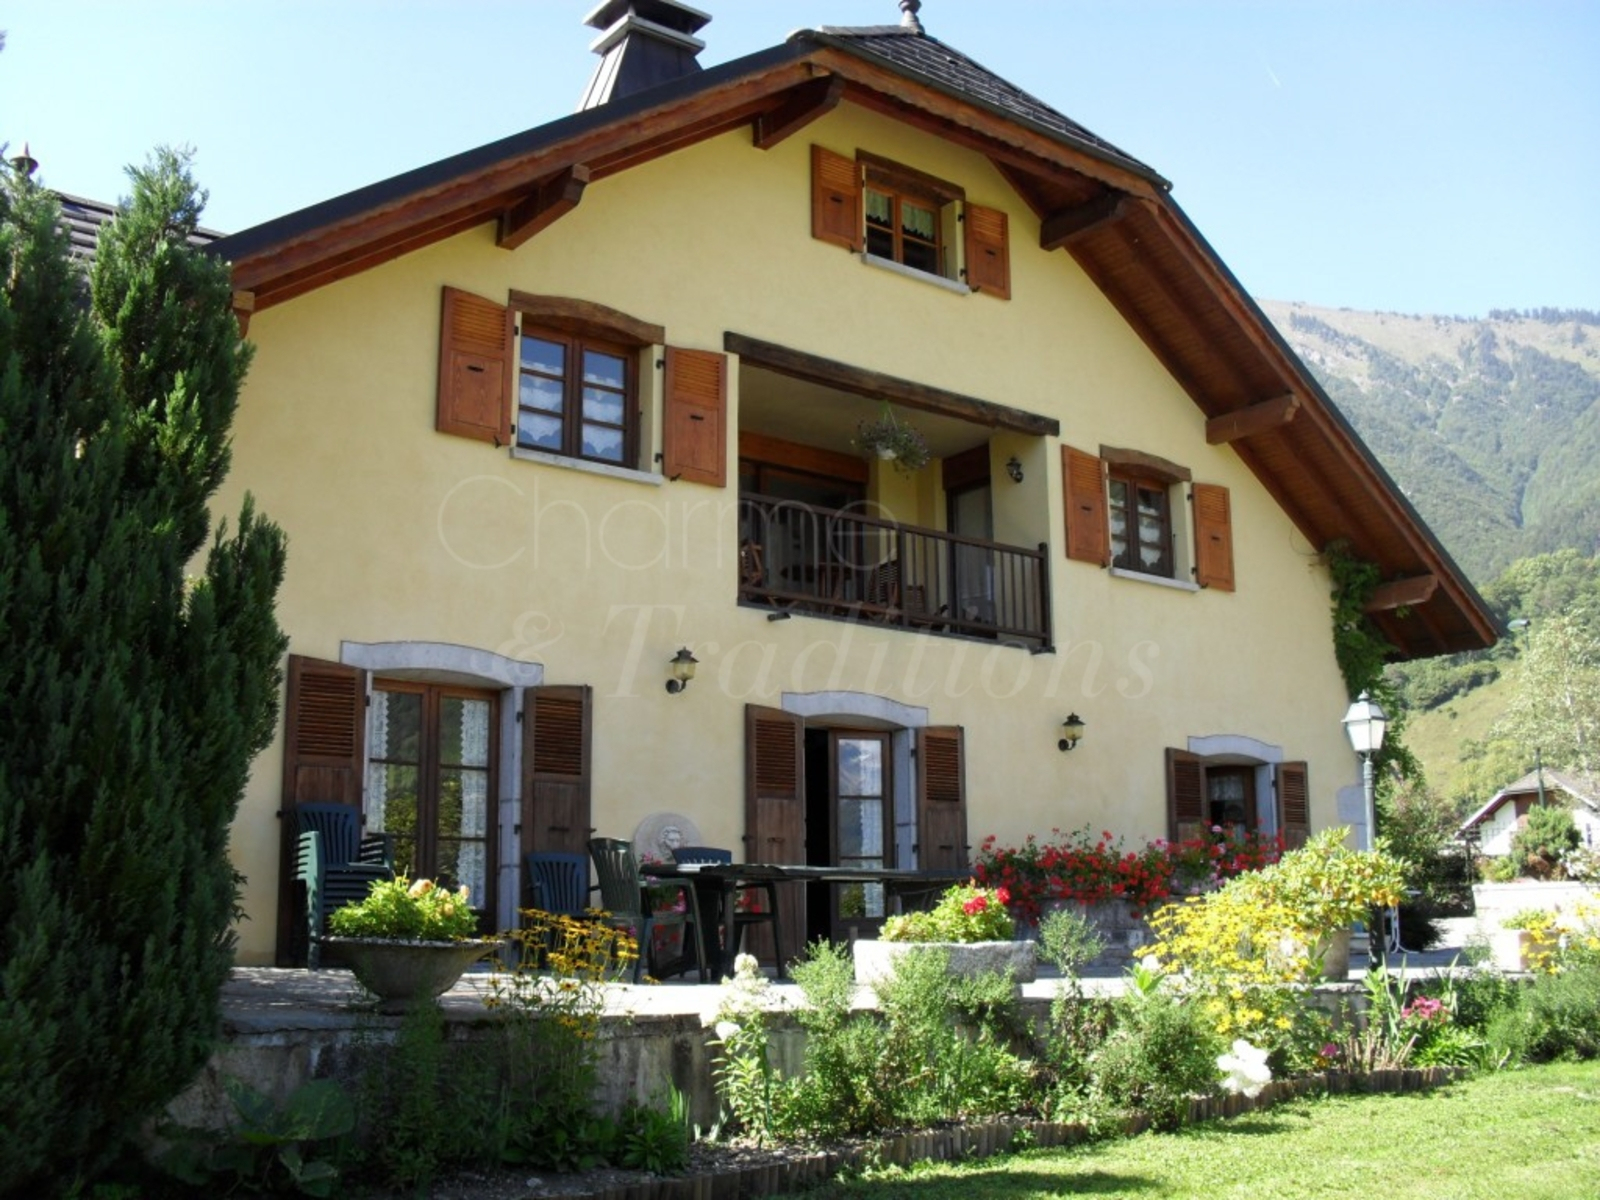 La Boissière : Chambre D'hote Taninges, Haute-Savoie tout Chambre D Hote Thonon Les Bains